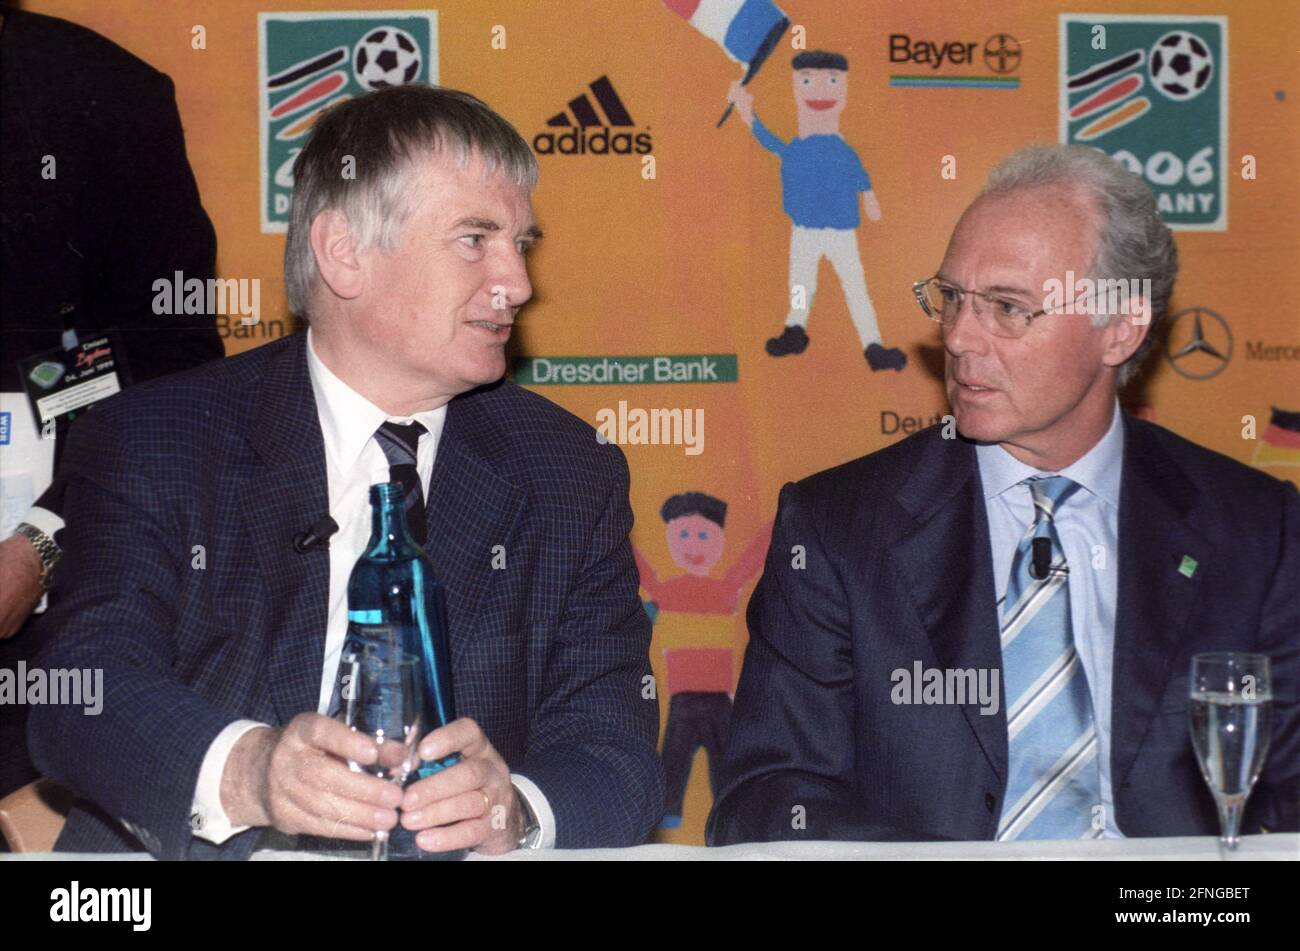 Conférence de presse pour la coupe du monde 2006 le 04.06.1999 à Leverkusen Franz Beckenbauer (à droite) et ministre fédéral de l'intérieur Otto Schily. [traduction automatique] Banque D'Images